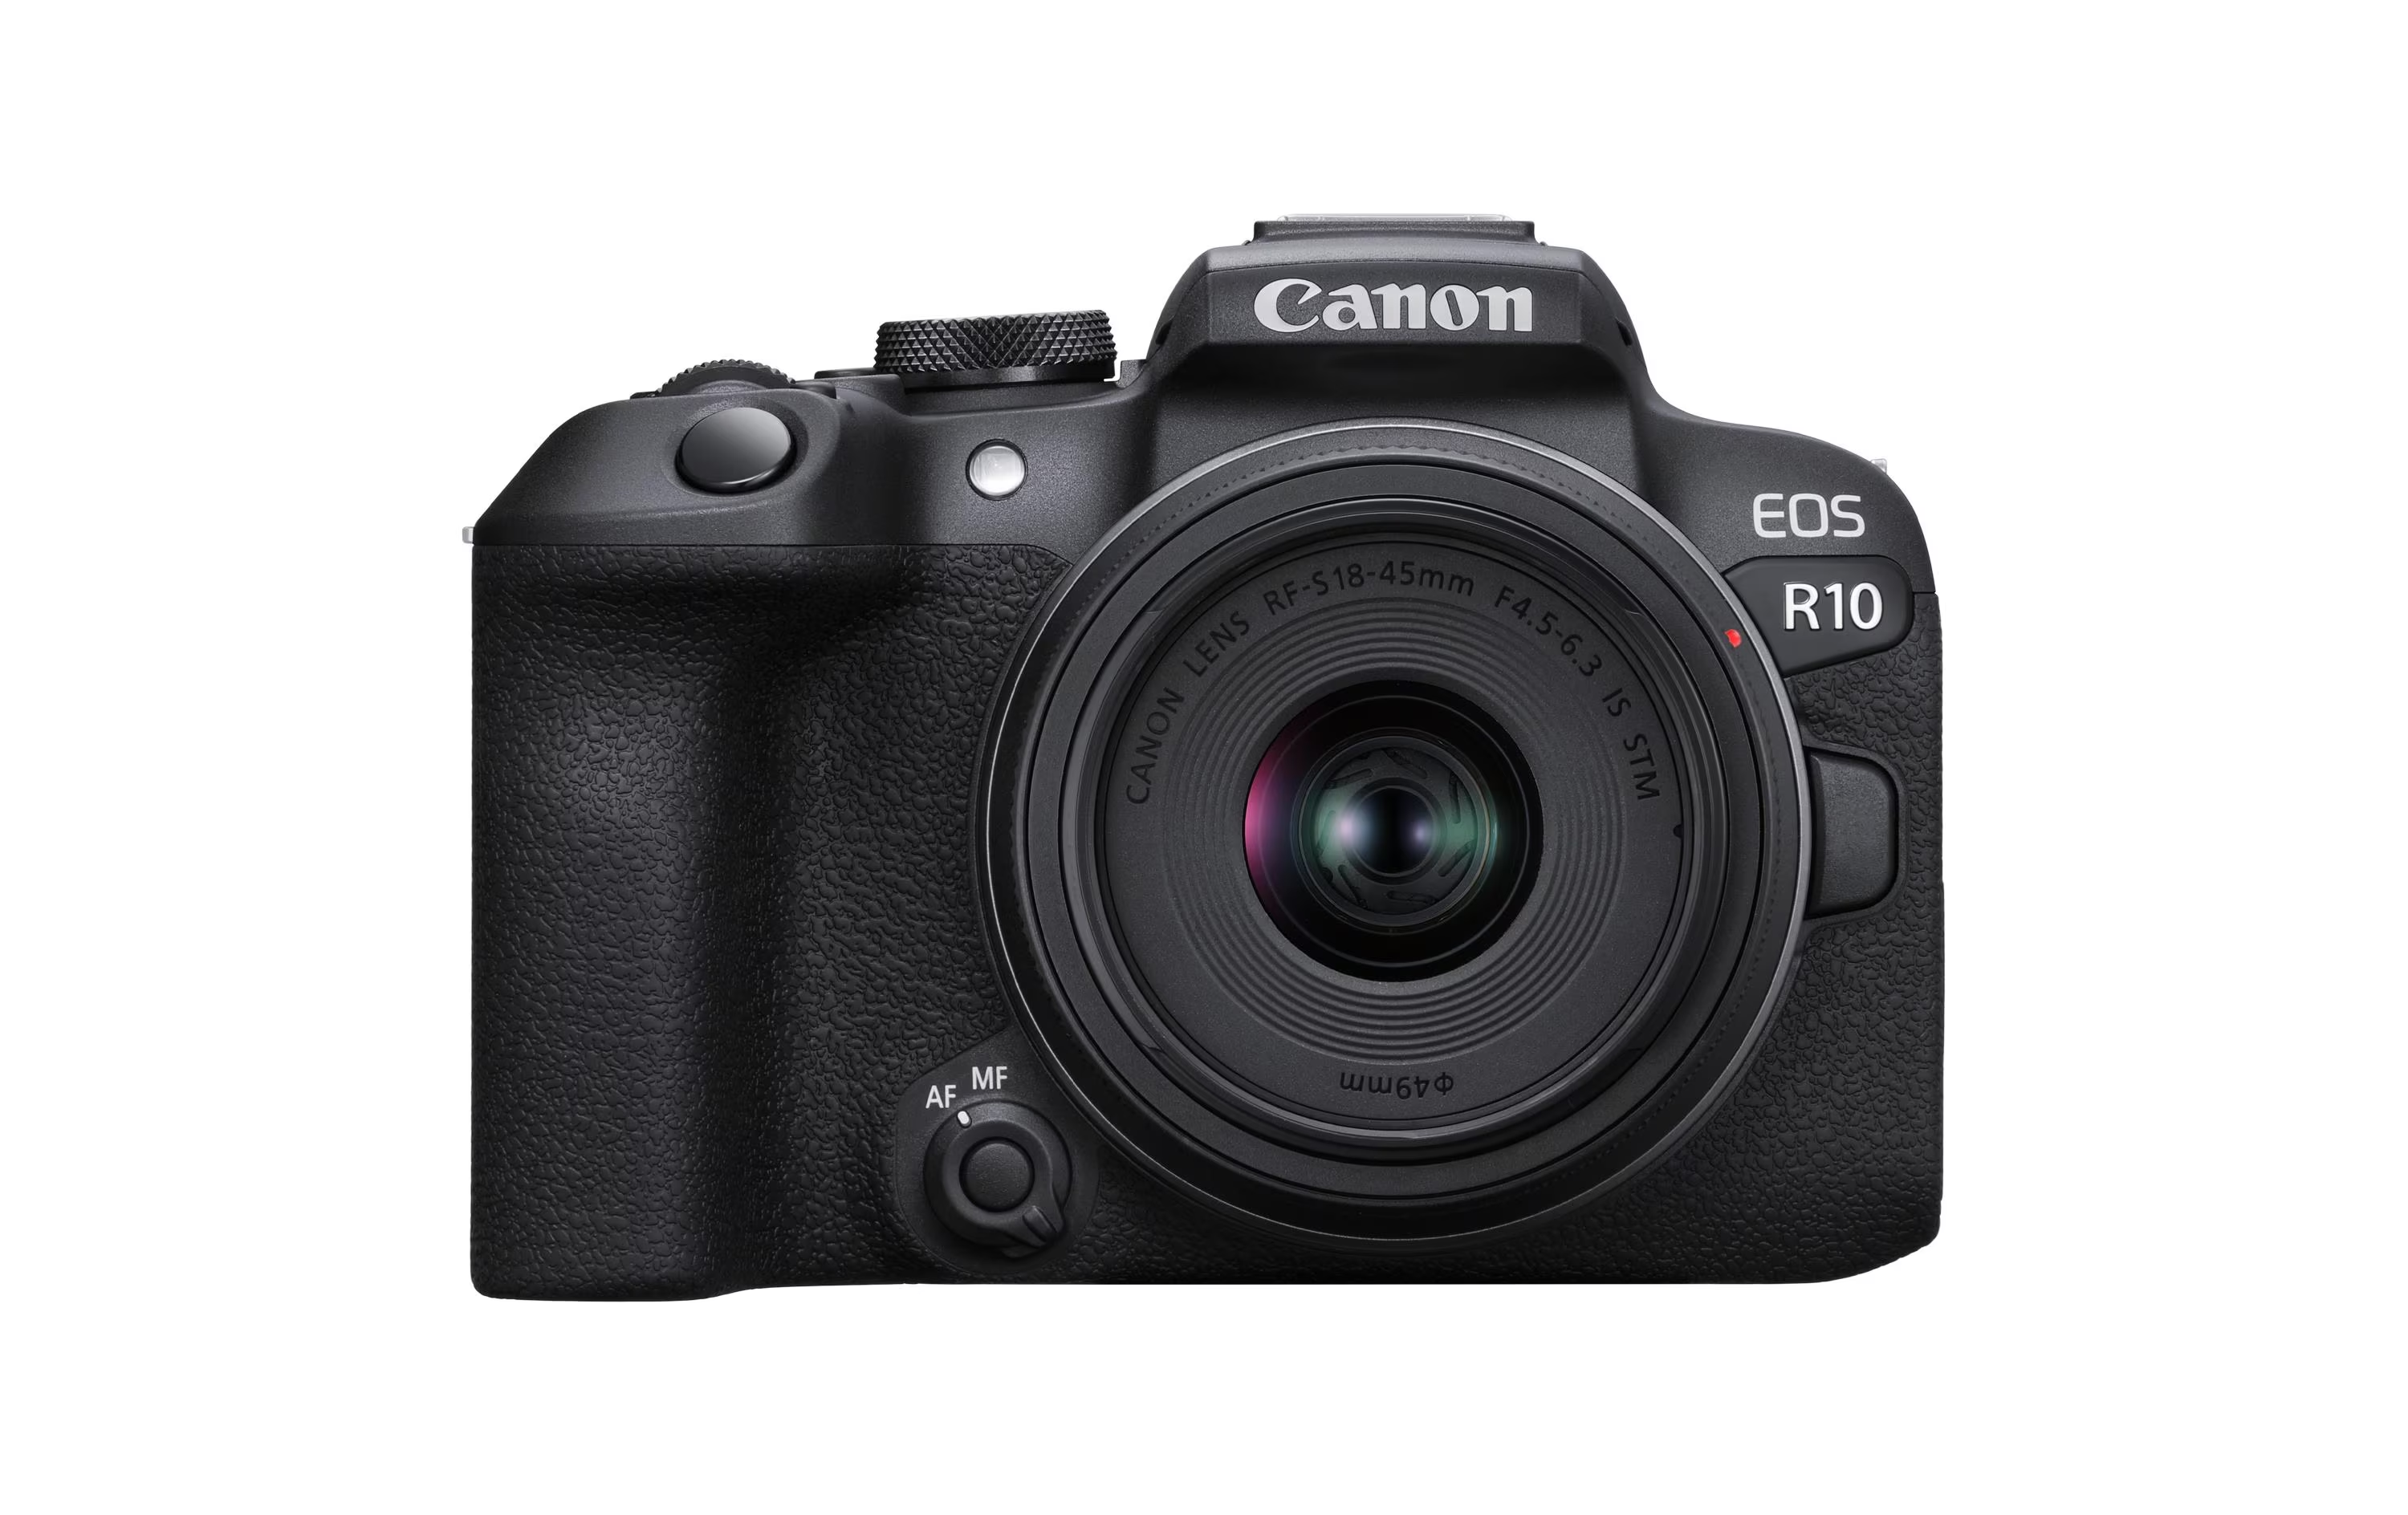 Schneller Alleskönner: Canon EOS R10 + RF-S 18-45mm f/4.5-6.3 IS STM Kit für effektiv 682 Franken bei Interdiscount